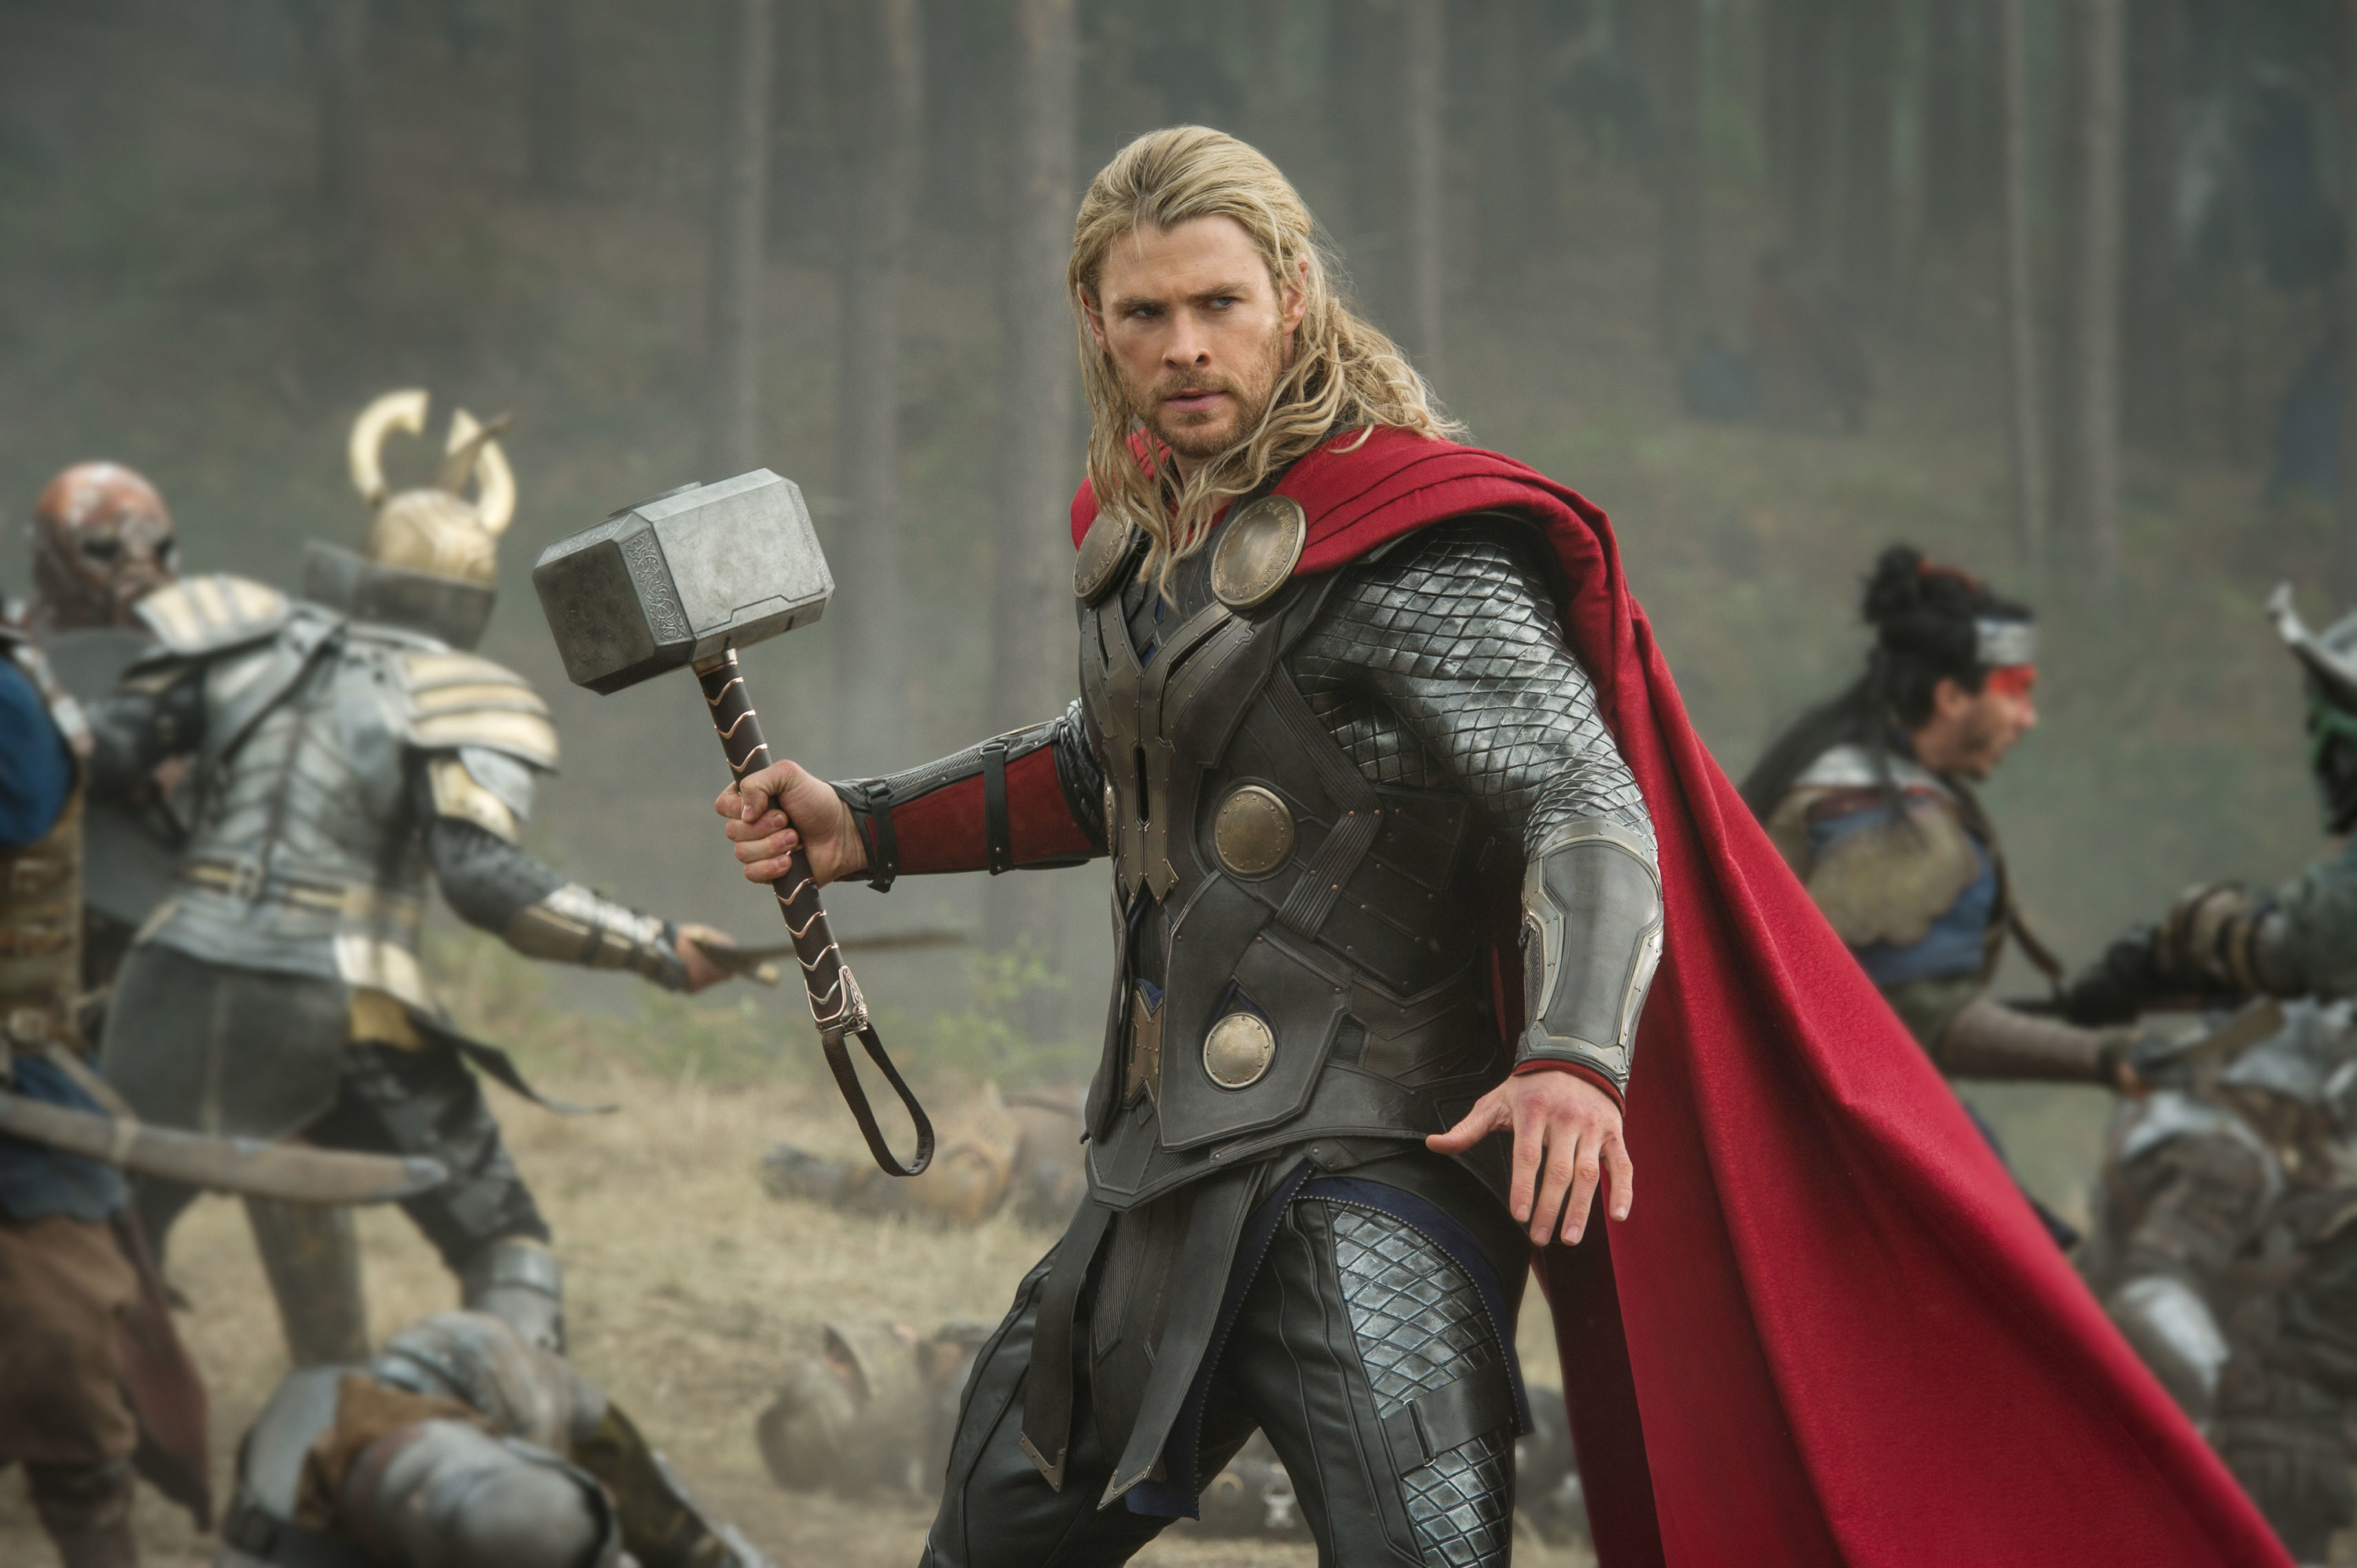 Thor weilding a hammer in "Thor: The Dark World"